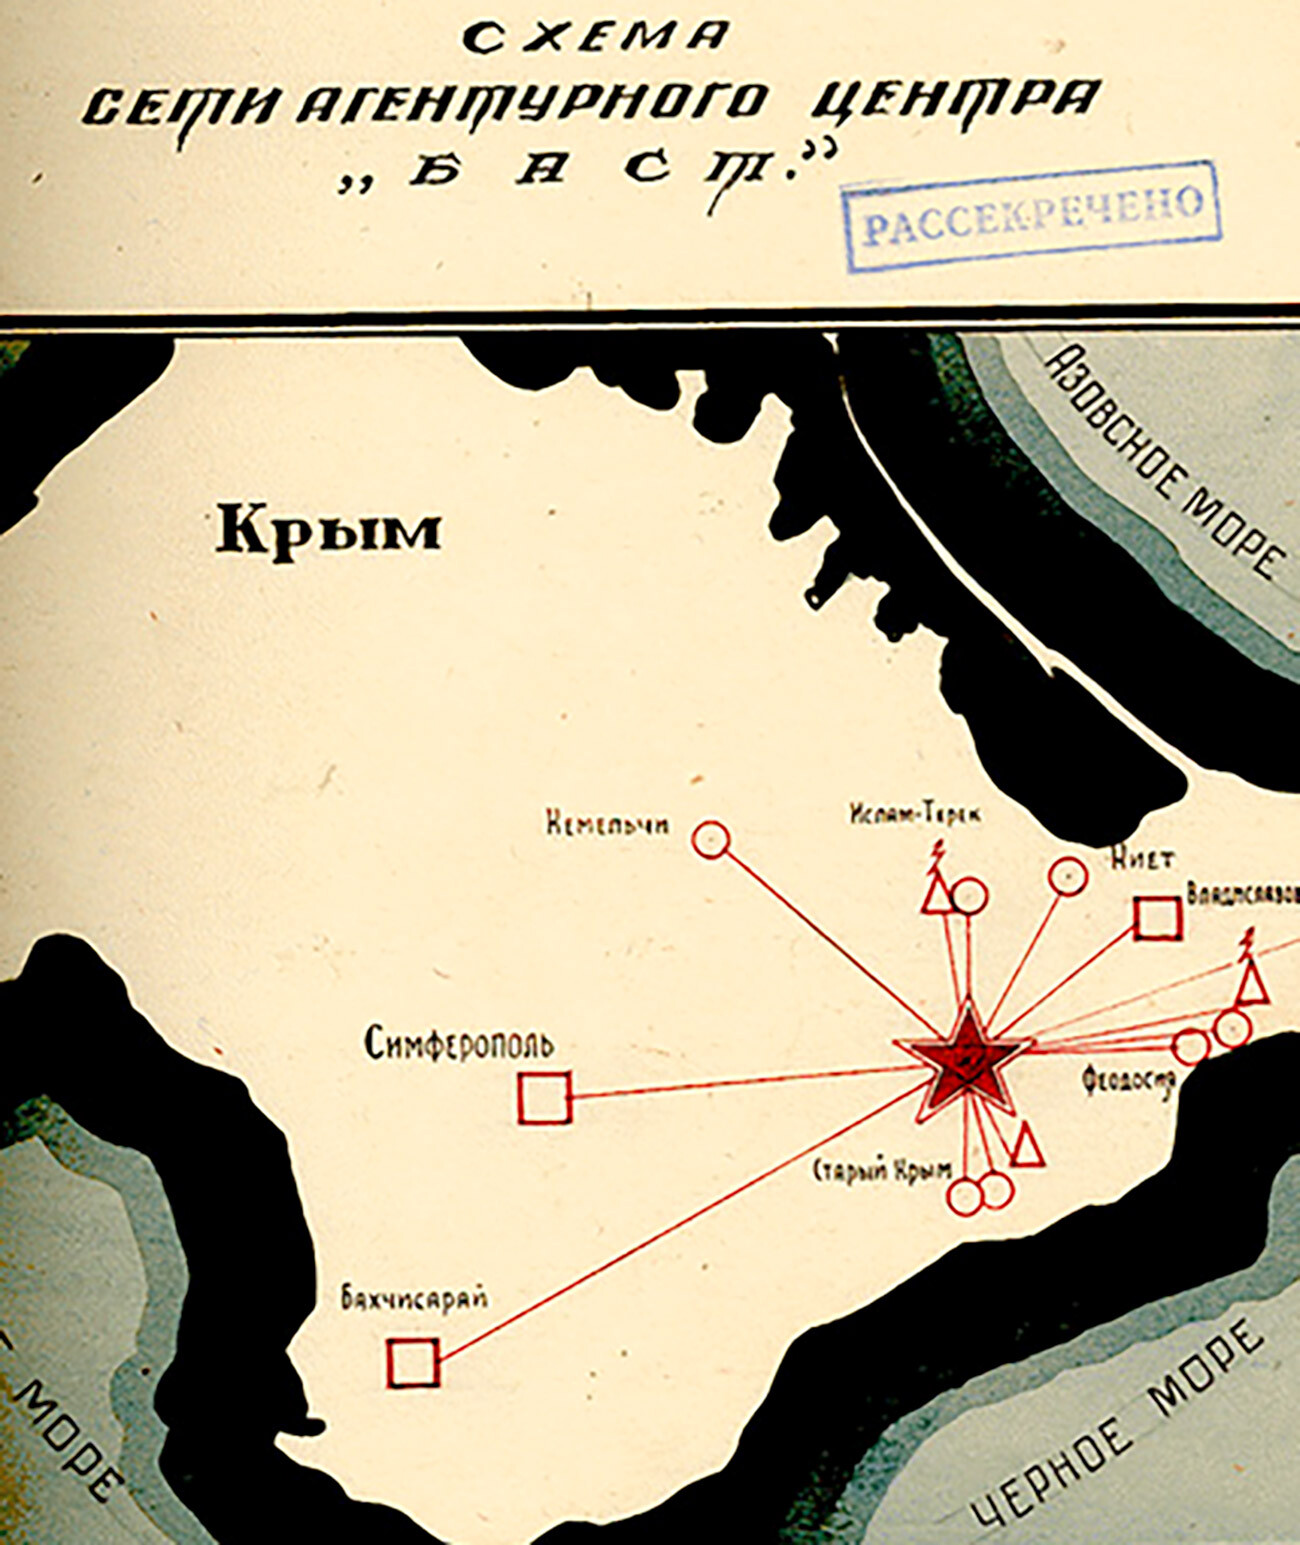 Esquema de la red de agentes del Centro Bast en Crimea, 1943-1944